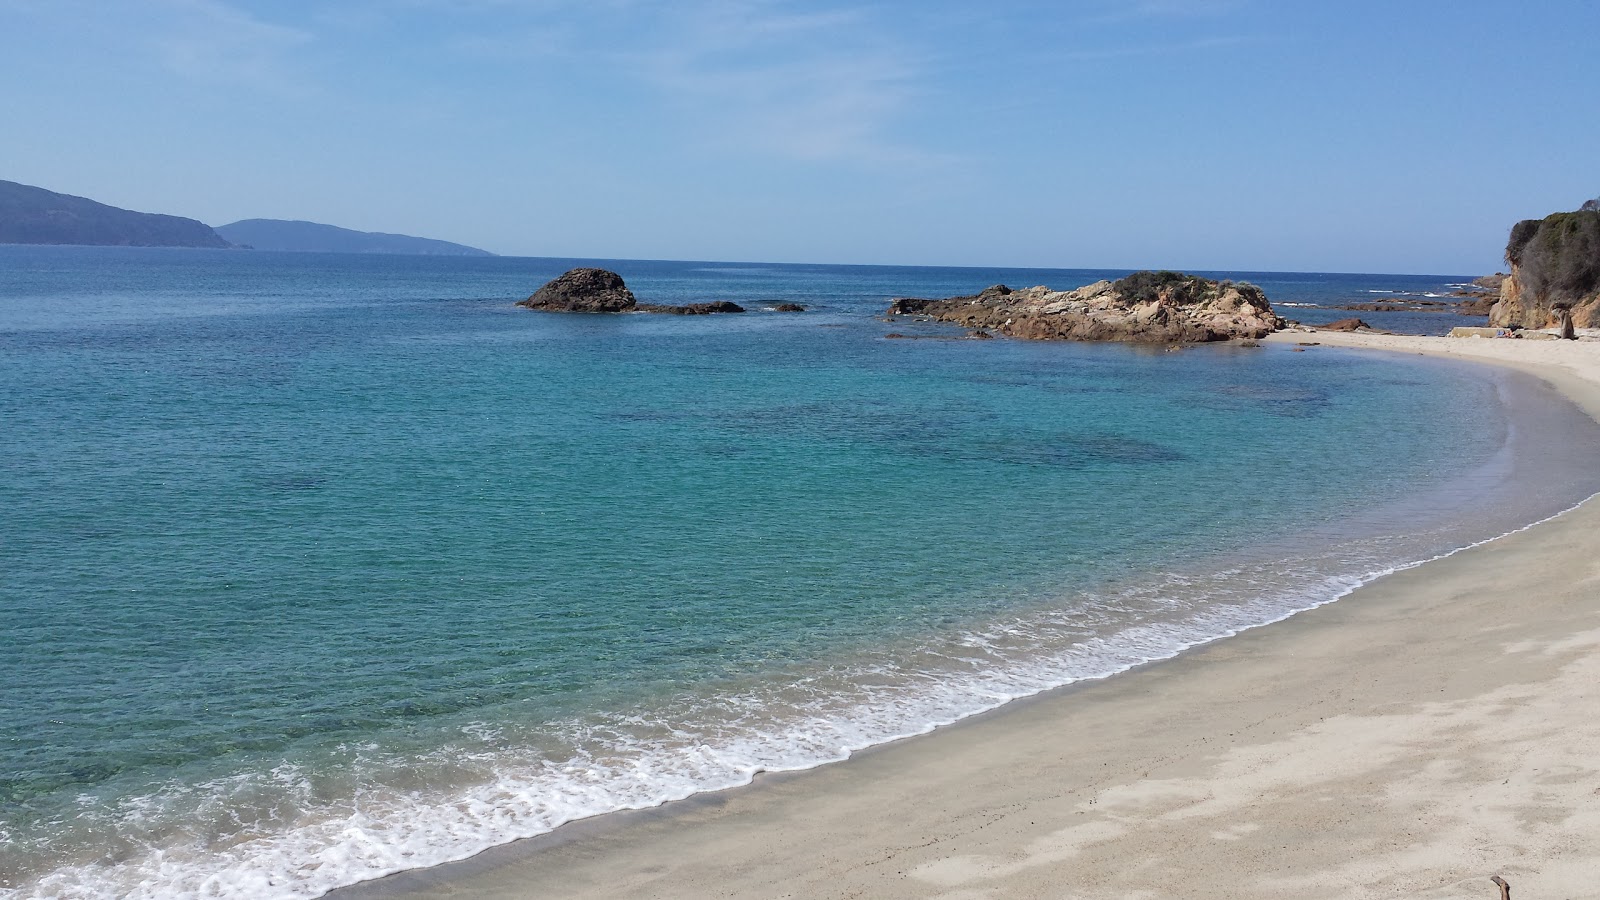 Photo de Liamone beach II - endroit populaire parmi les connaisseurs de la détente